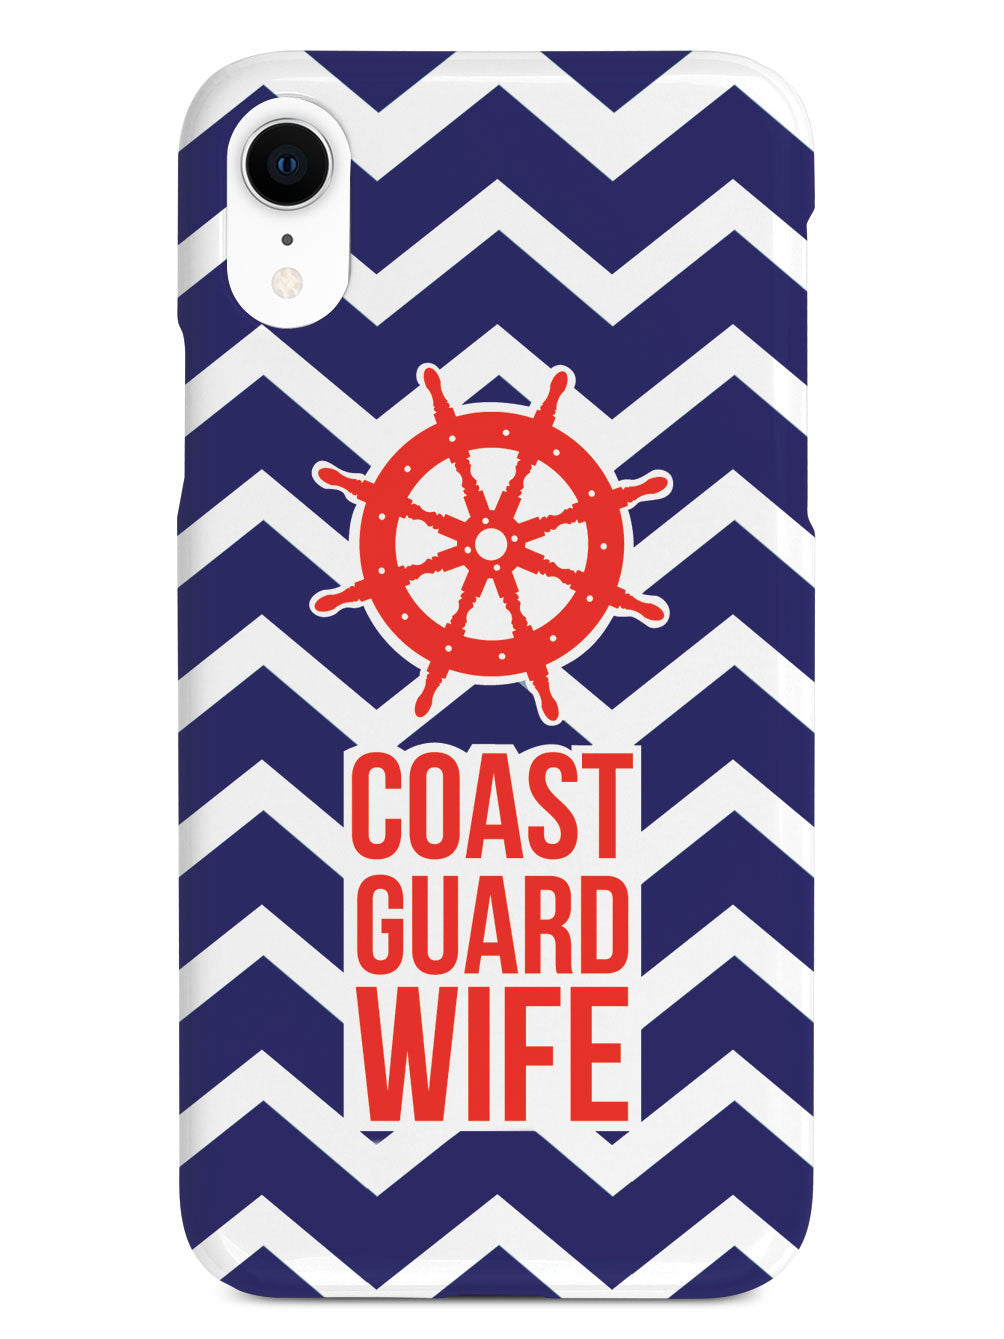 Coast Guard Wife Military Case